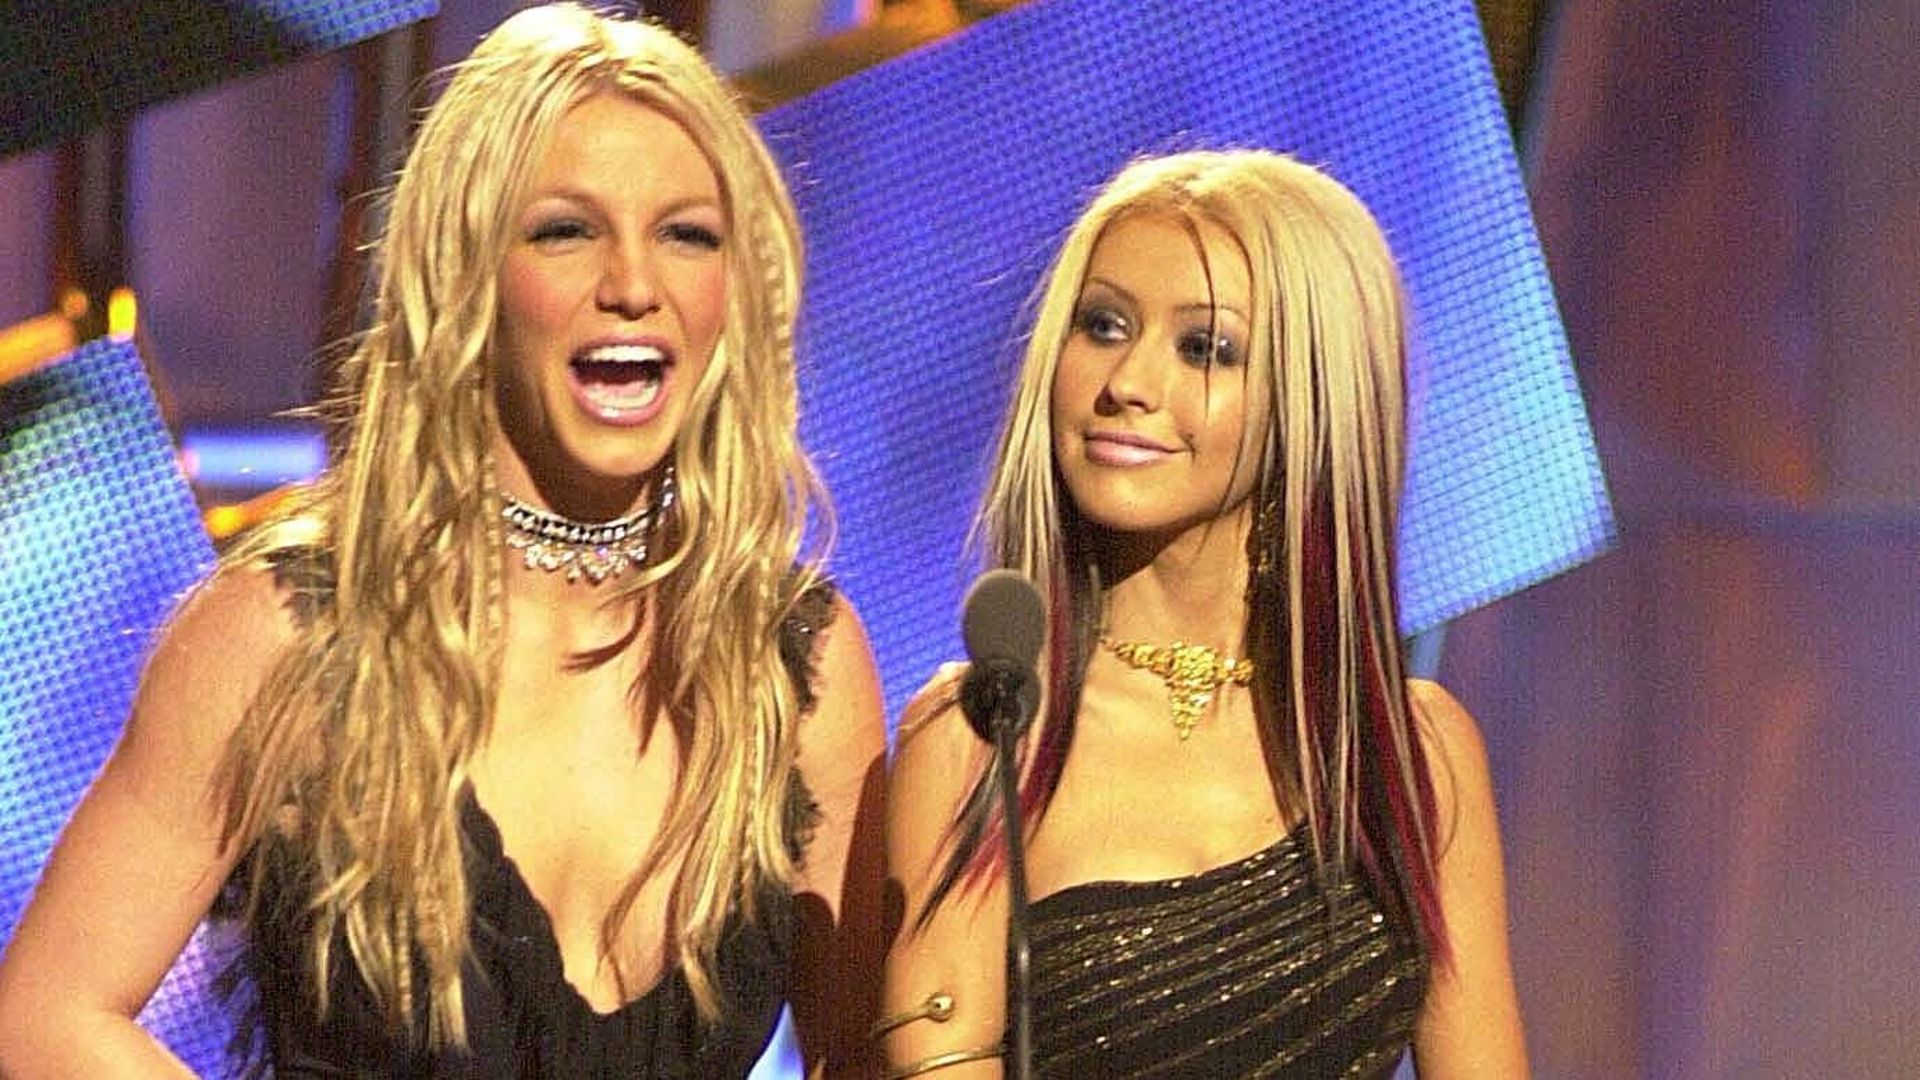 Cette photo de Britney Spears et Christina Aguilera date de 2000. Une complicité bien éloignée des tensions actuelles entre les deux reines de la pop pour cause de body shaming.